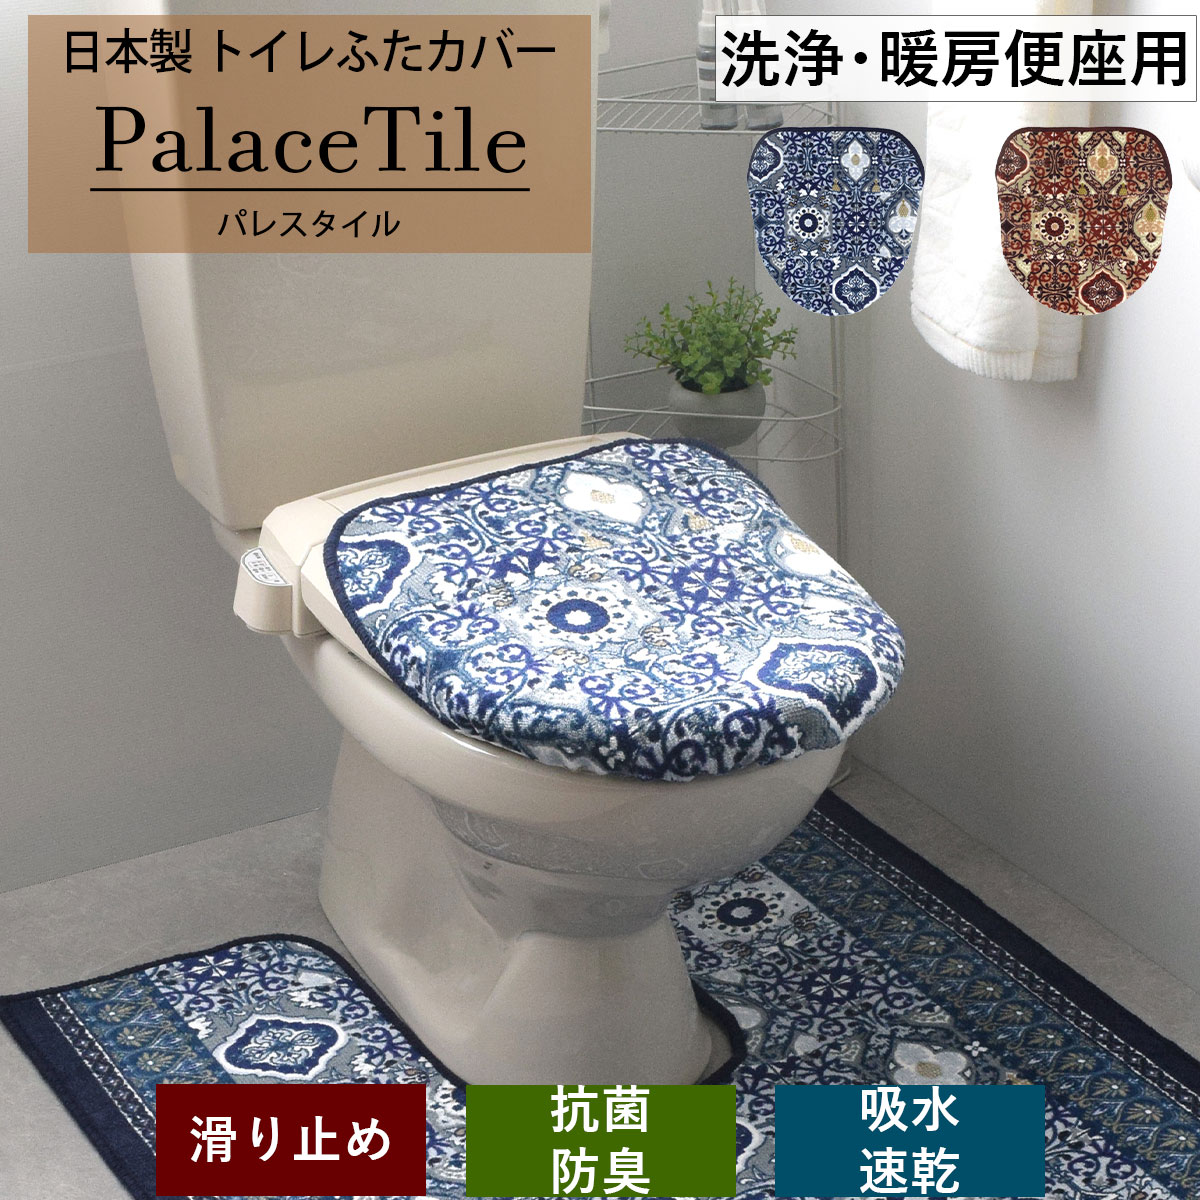 トイレ 便座フタカバー ブルー 抗菌防臭加工 - カーペット